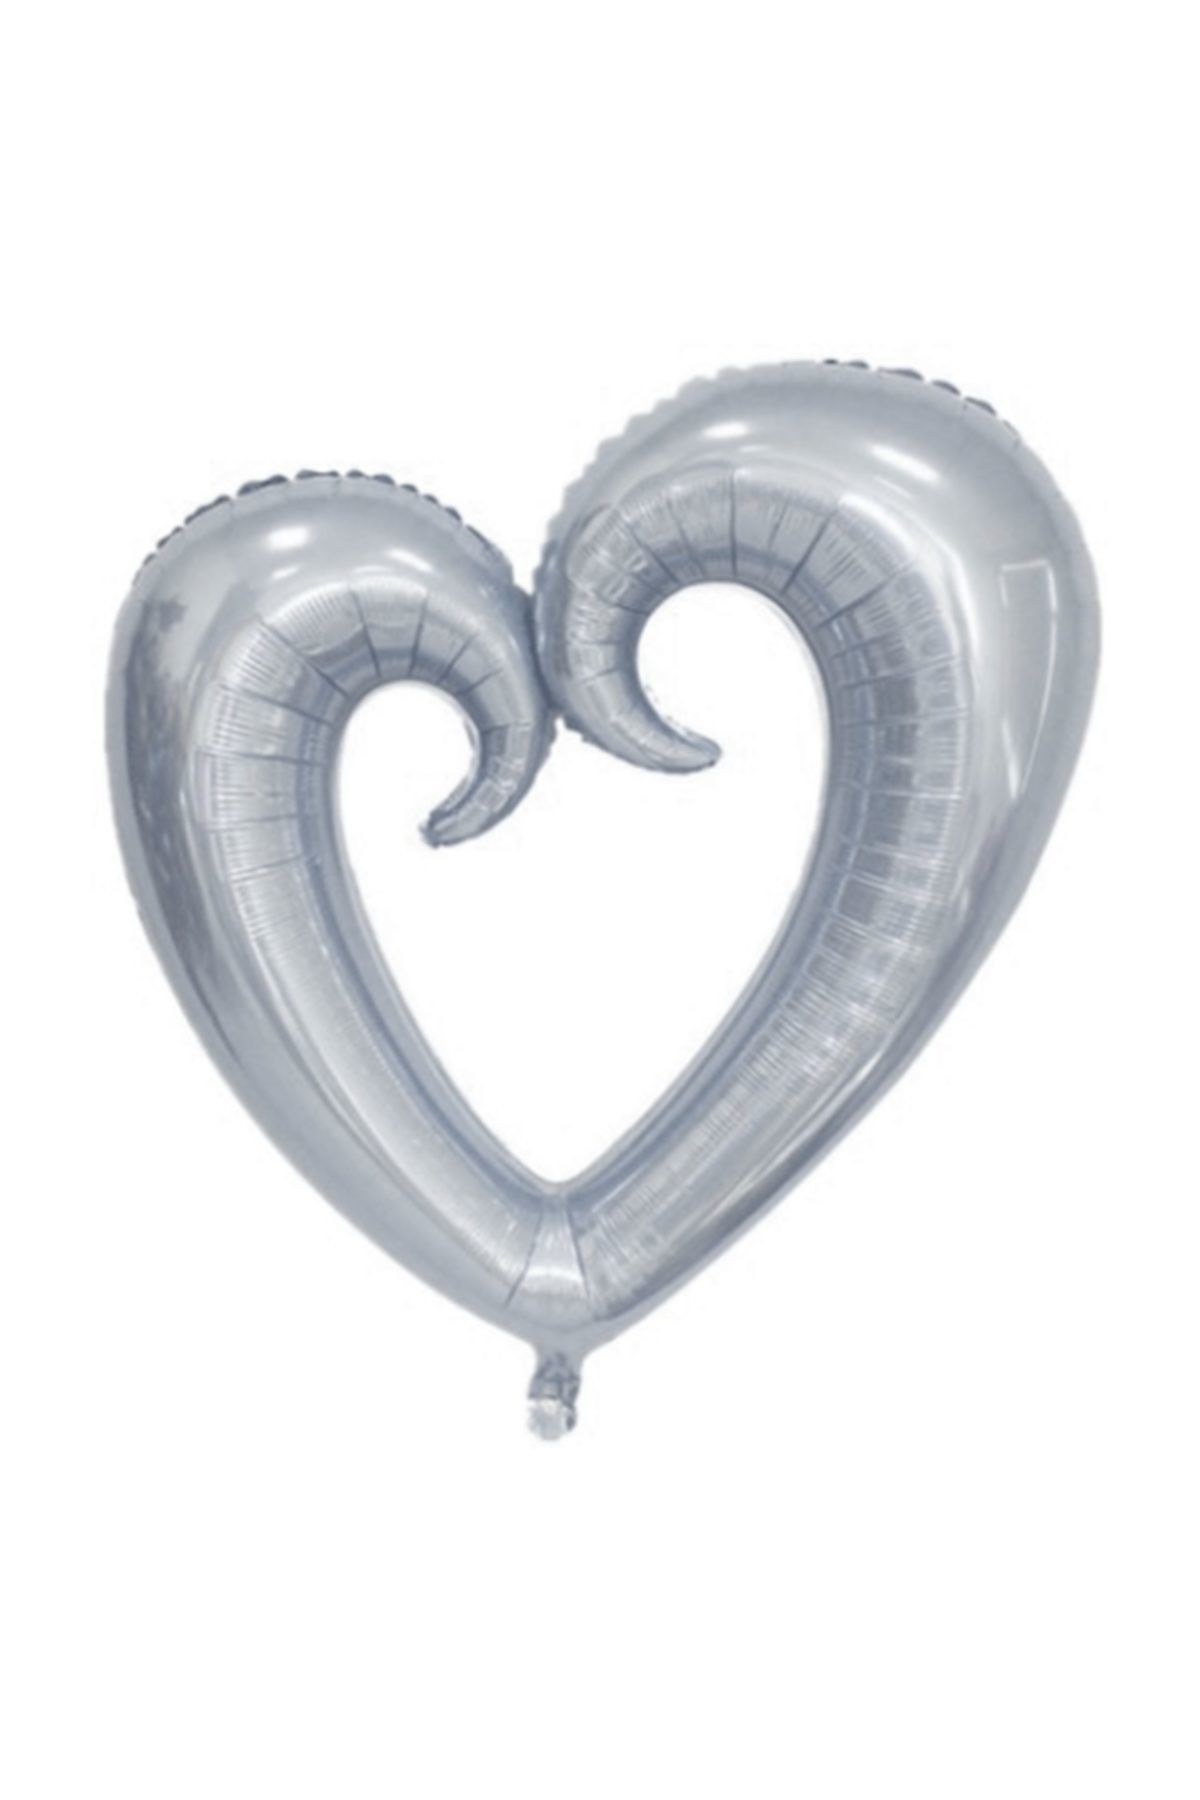 Partici Kıvrımlı Gümüş Kalp Folyo Balon 100 cm